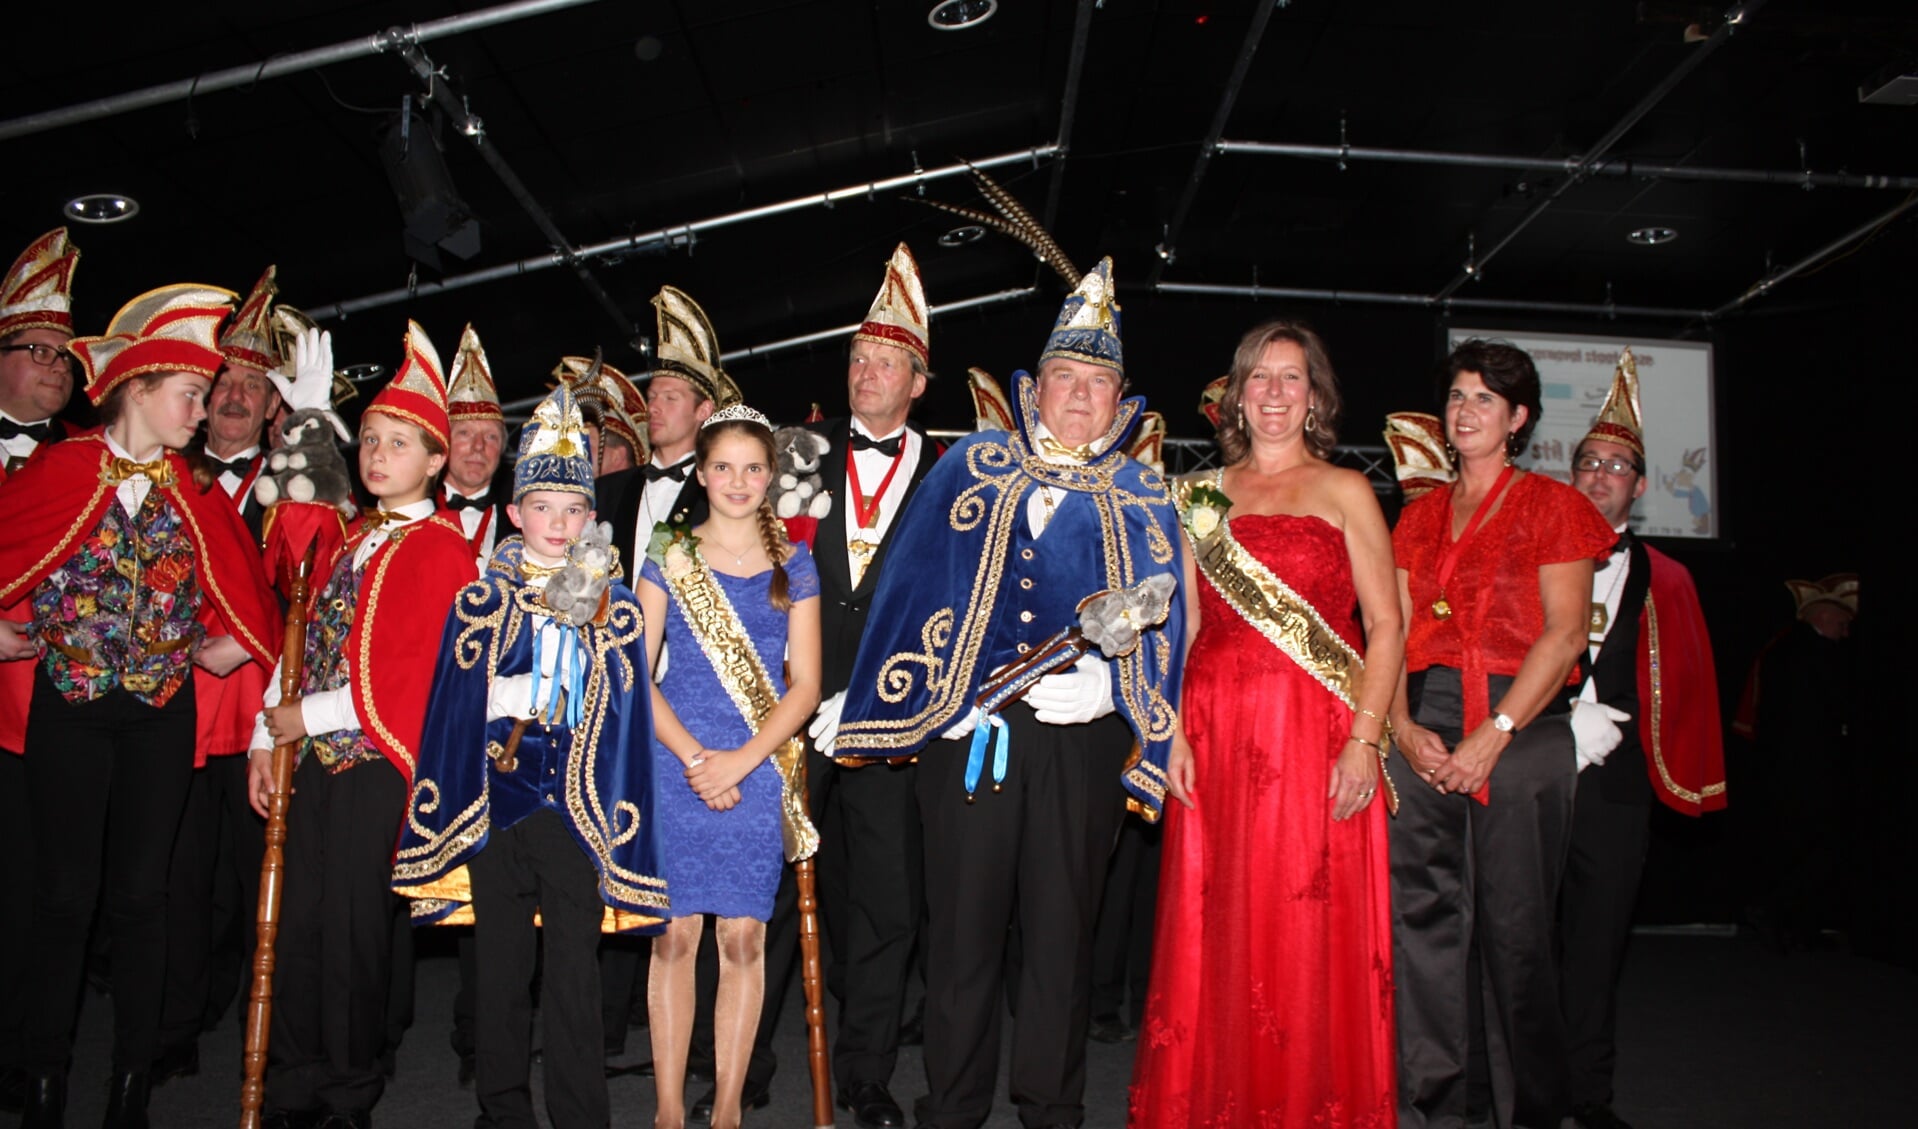 De nieuwe prinsenparen van De Zilkse Duinknijnen zijn geïnstalleerd. | Foto: met dank aan Margriet van Saase